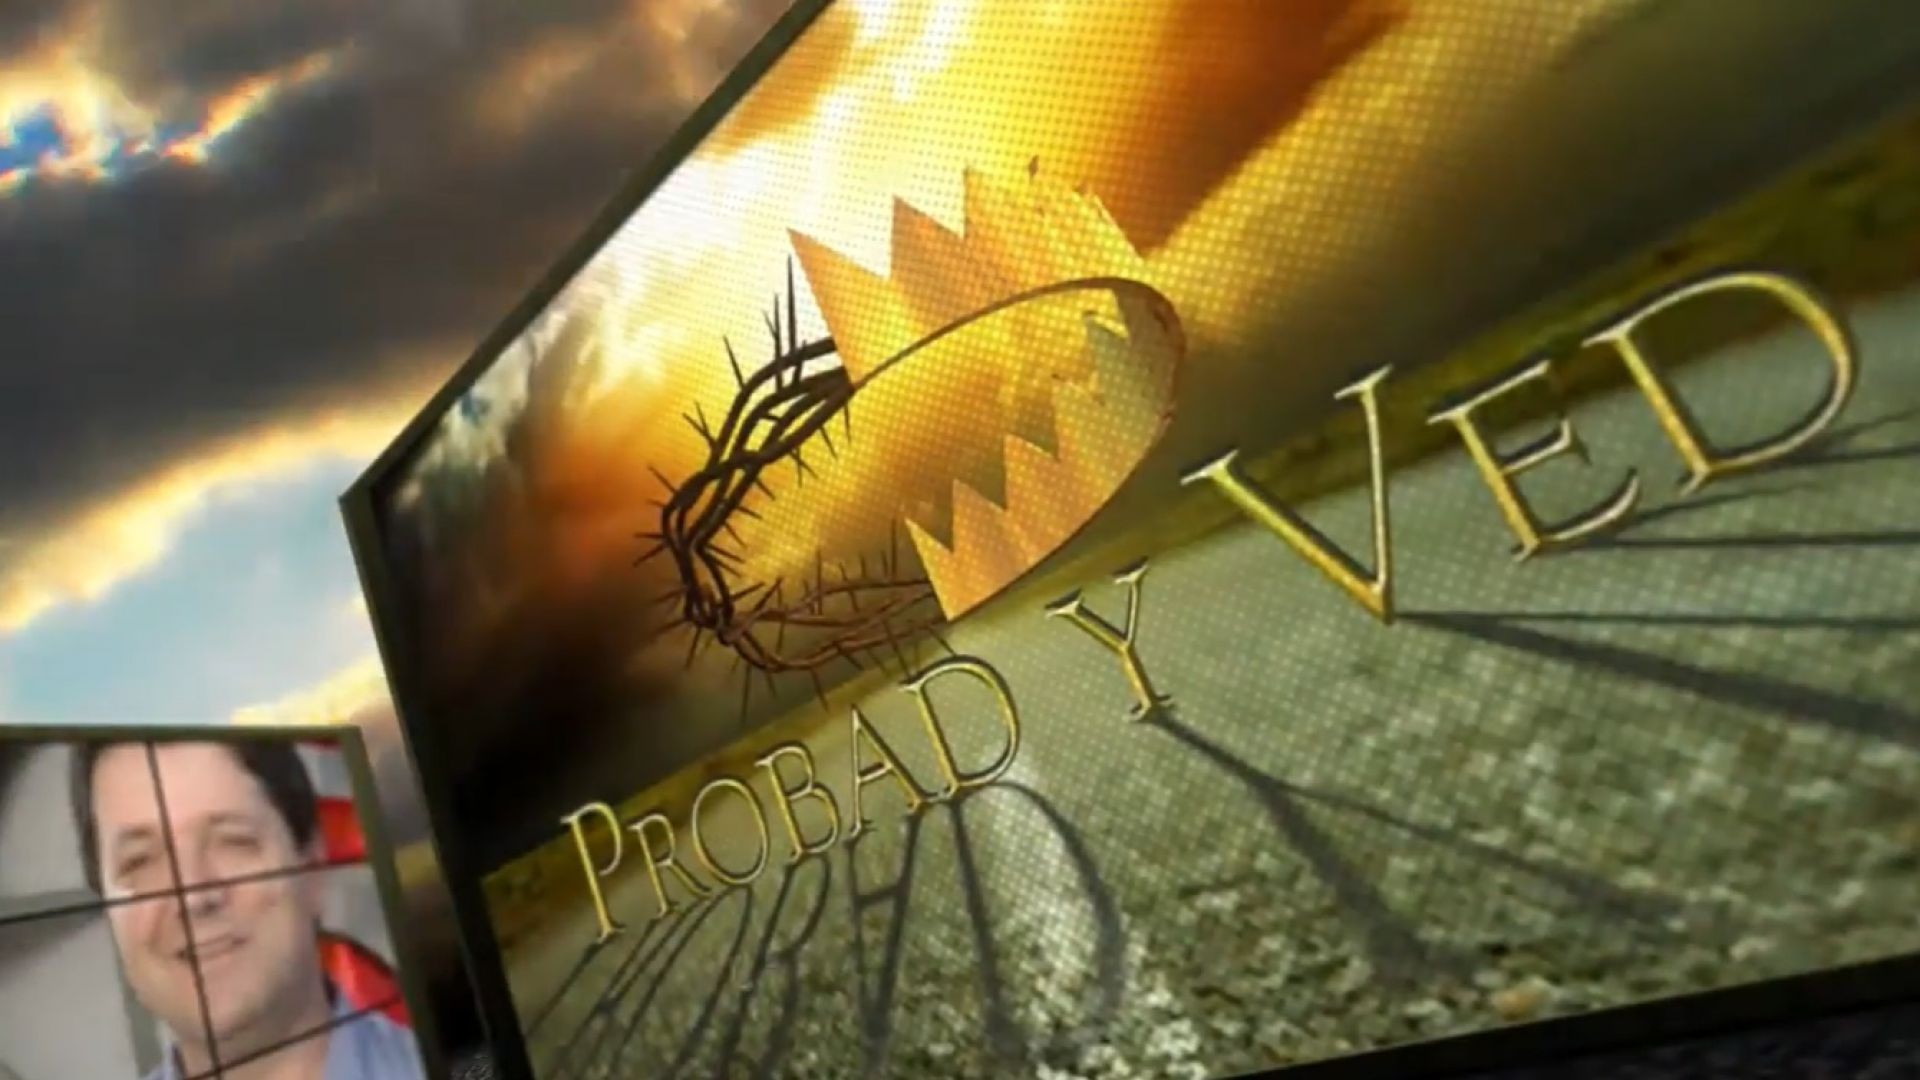 Probad y Ved 2012 - Pactos de fe